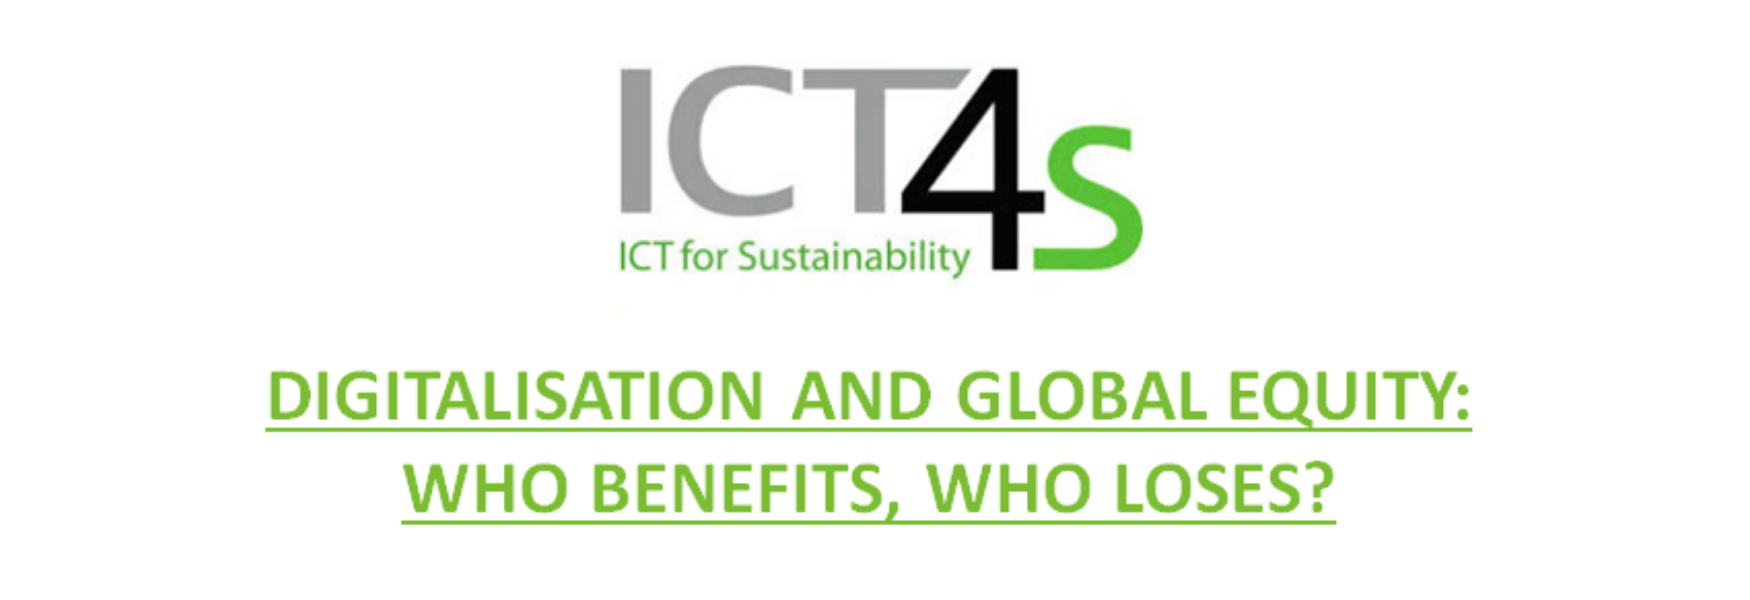 ICT4S